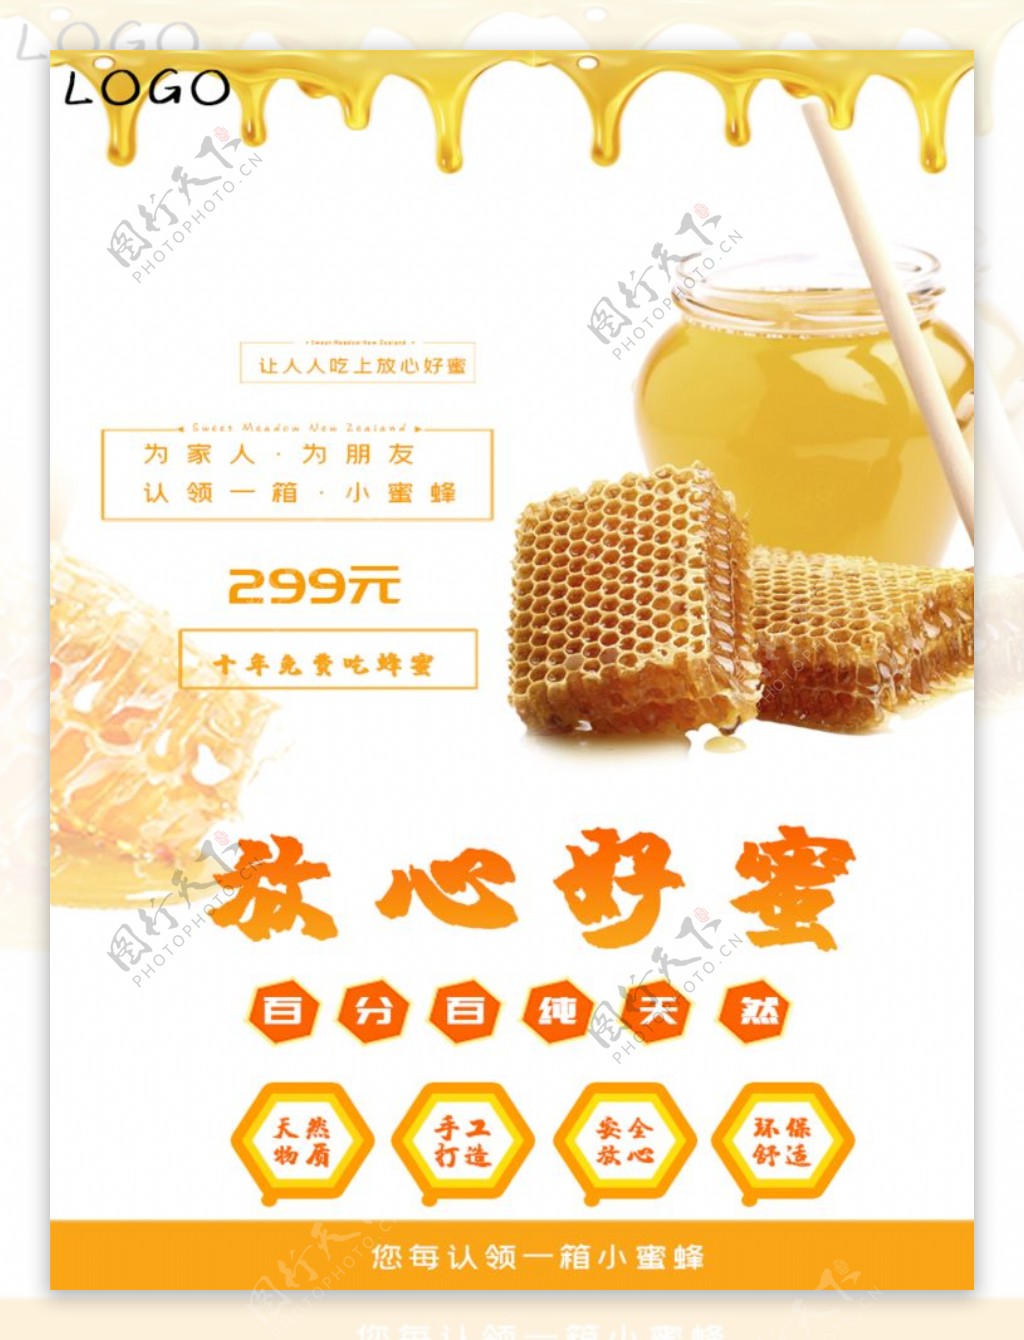 蜂蜜促销美食海报